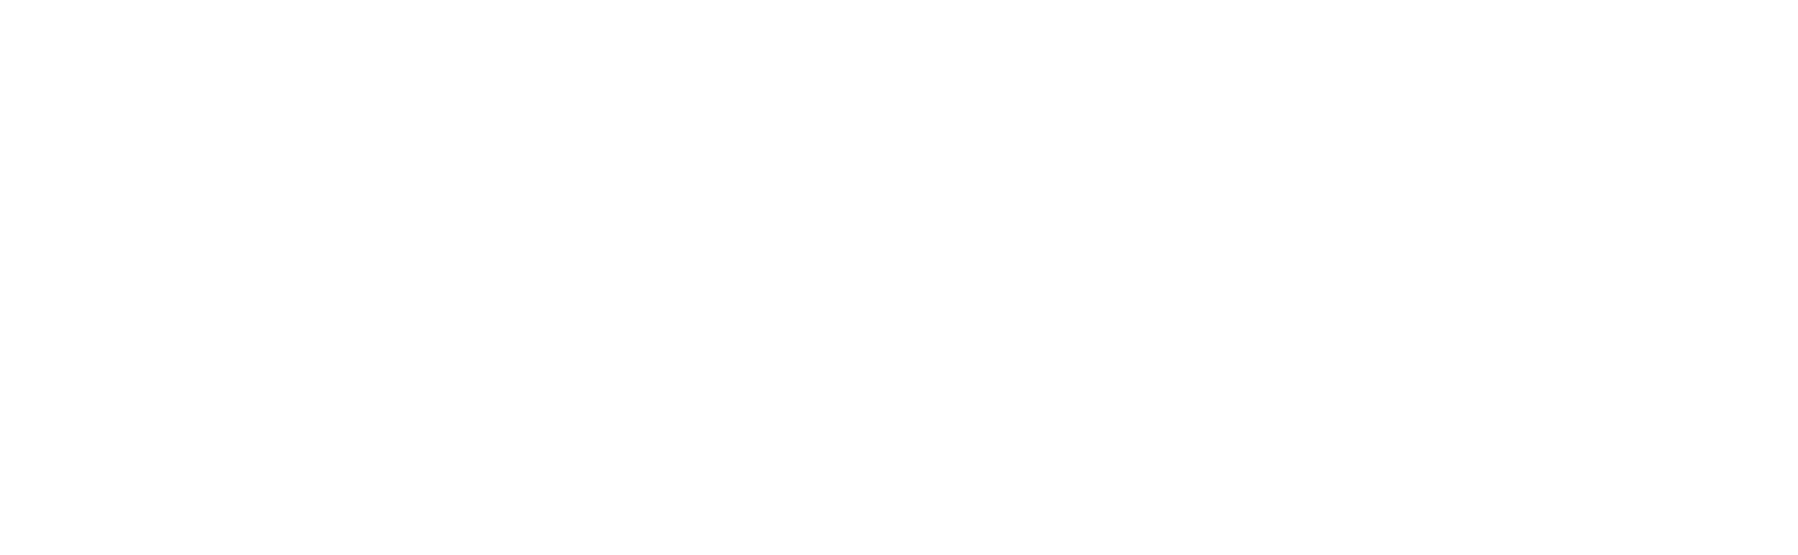 VIA l TECH Logo_white